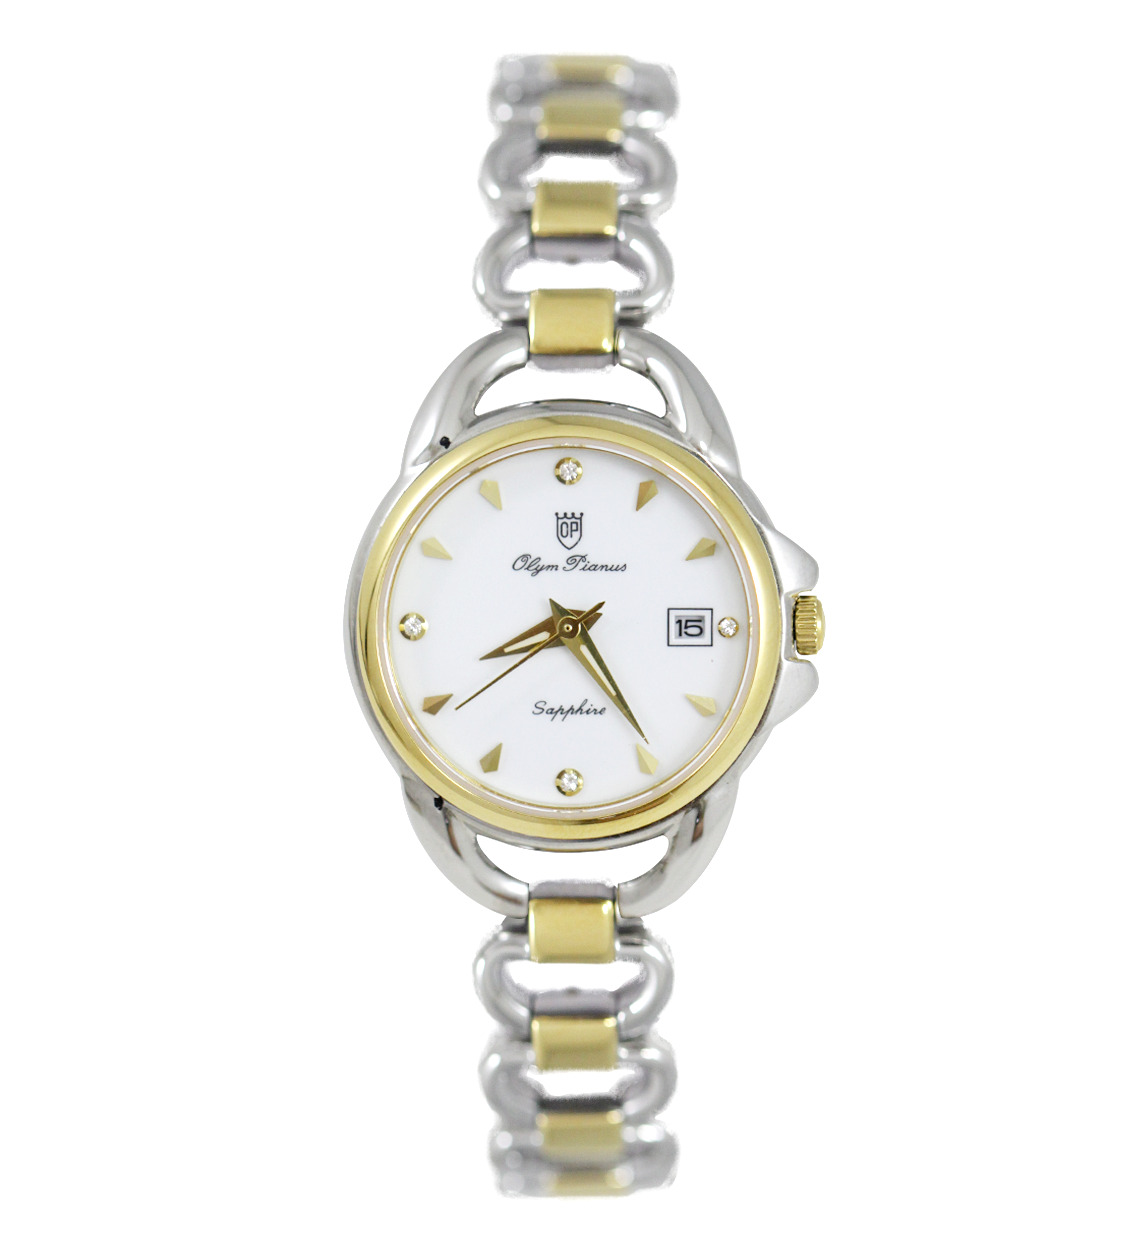 Đồng hồ kim nữ Olym Pianus OP2460LK - Màu trắng, vàng